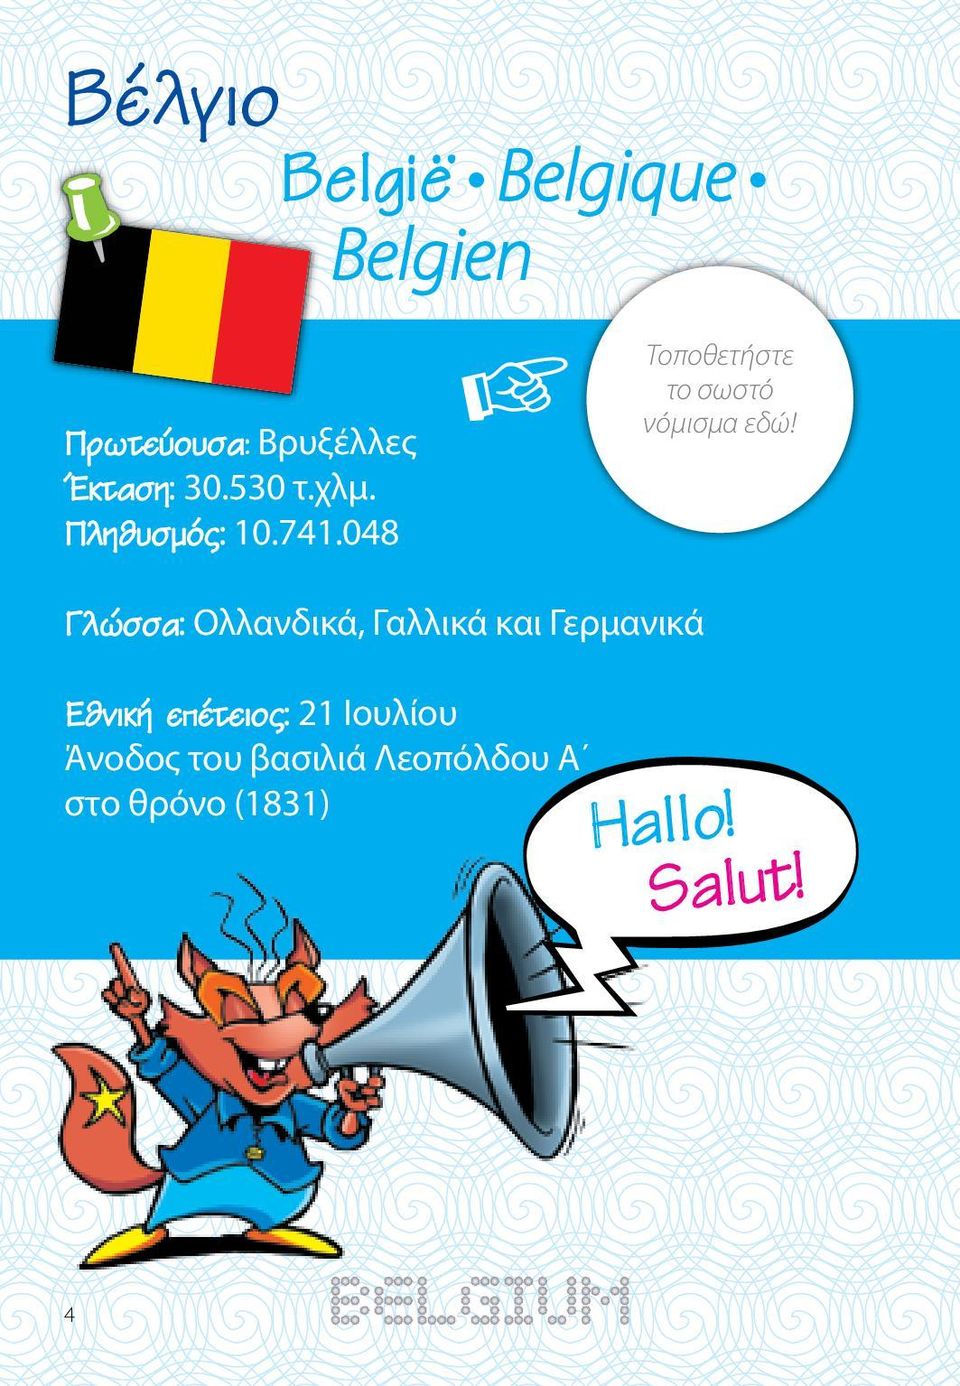 Γλώσσα: Ολλανδικά, Γαλλικά και Γερμανικά Εθνική επέτειος: 21